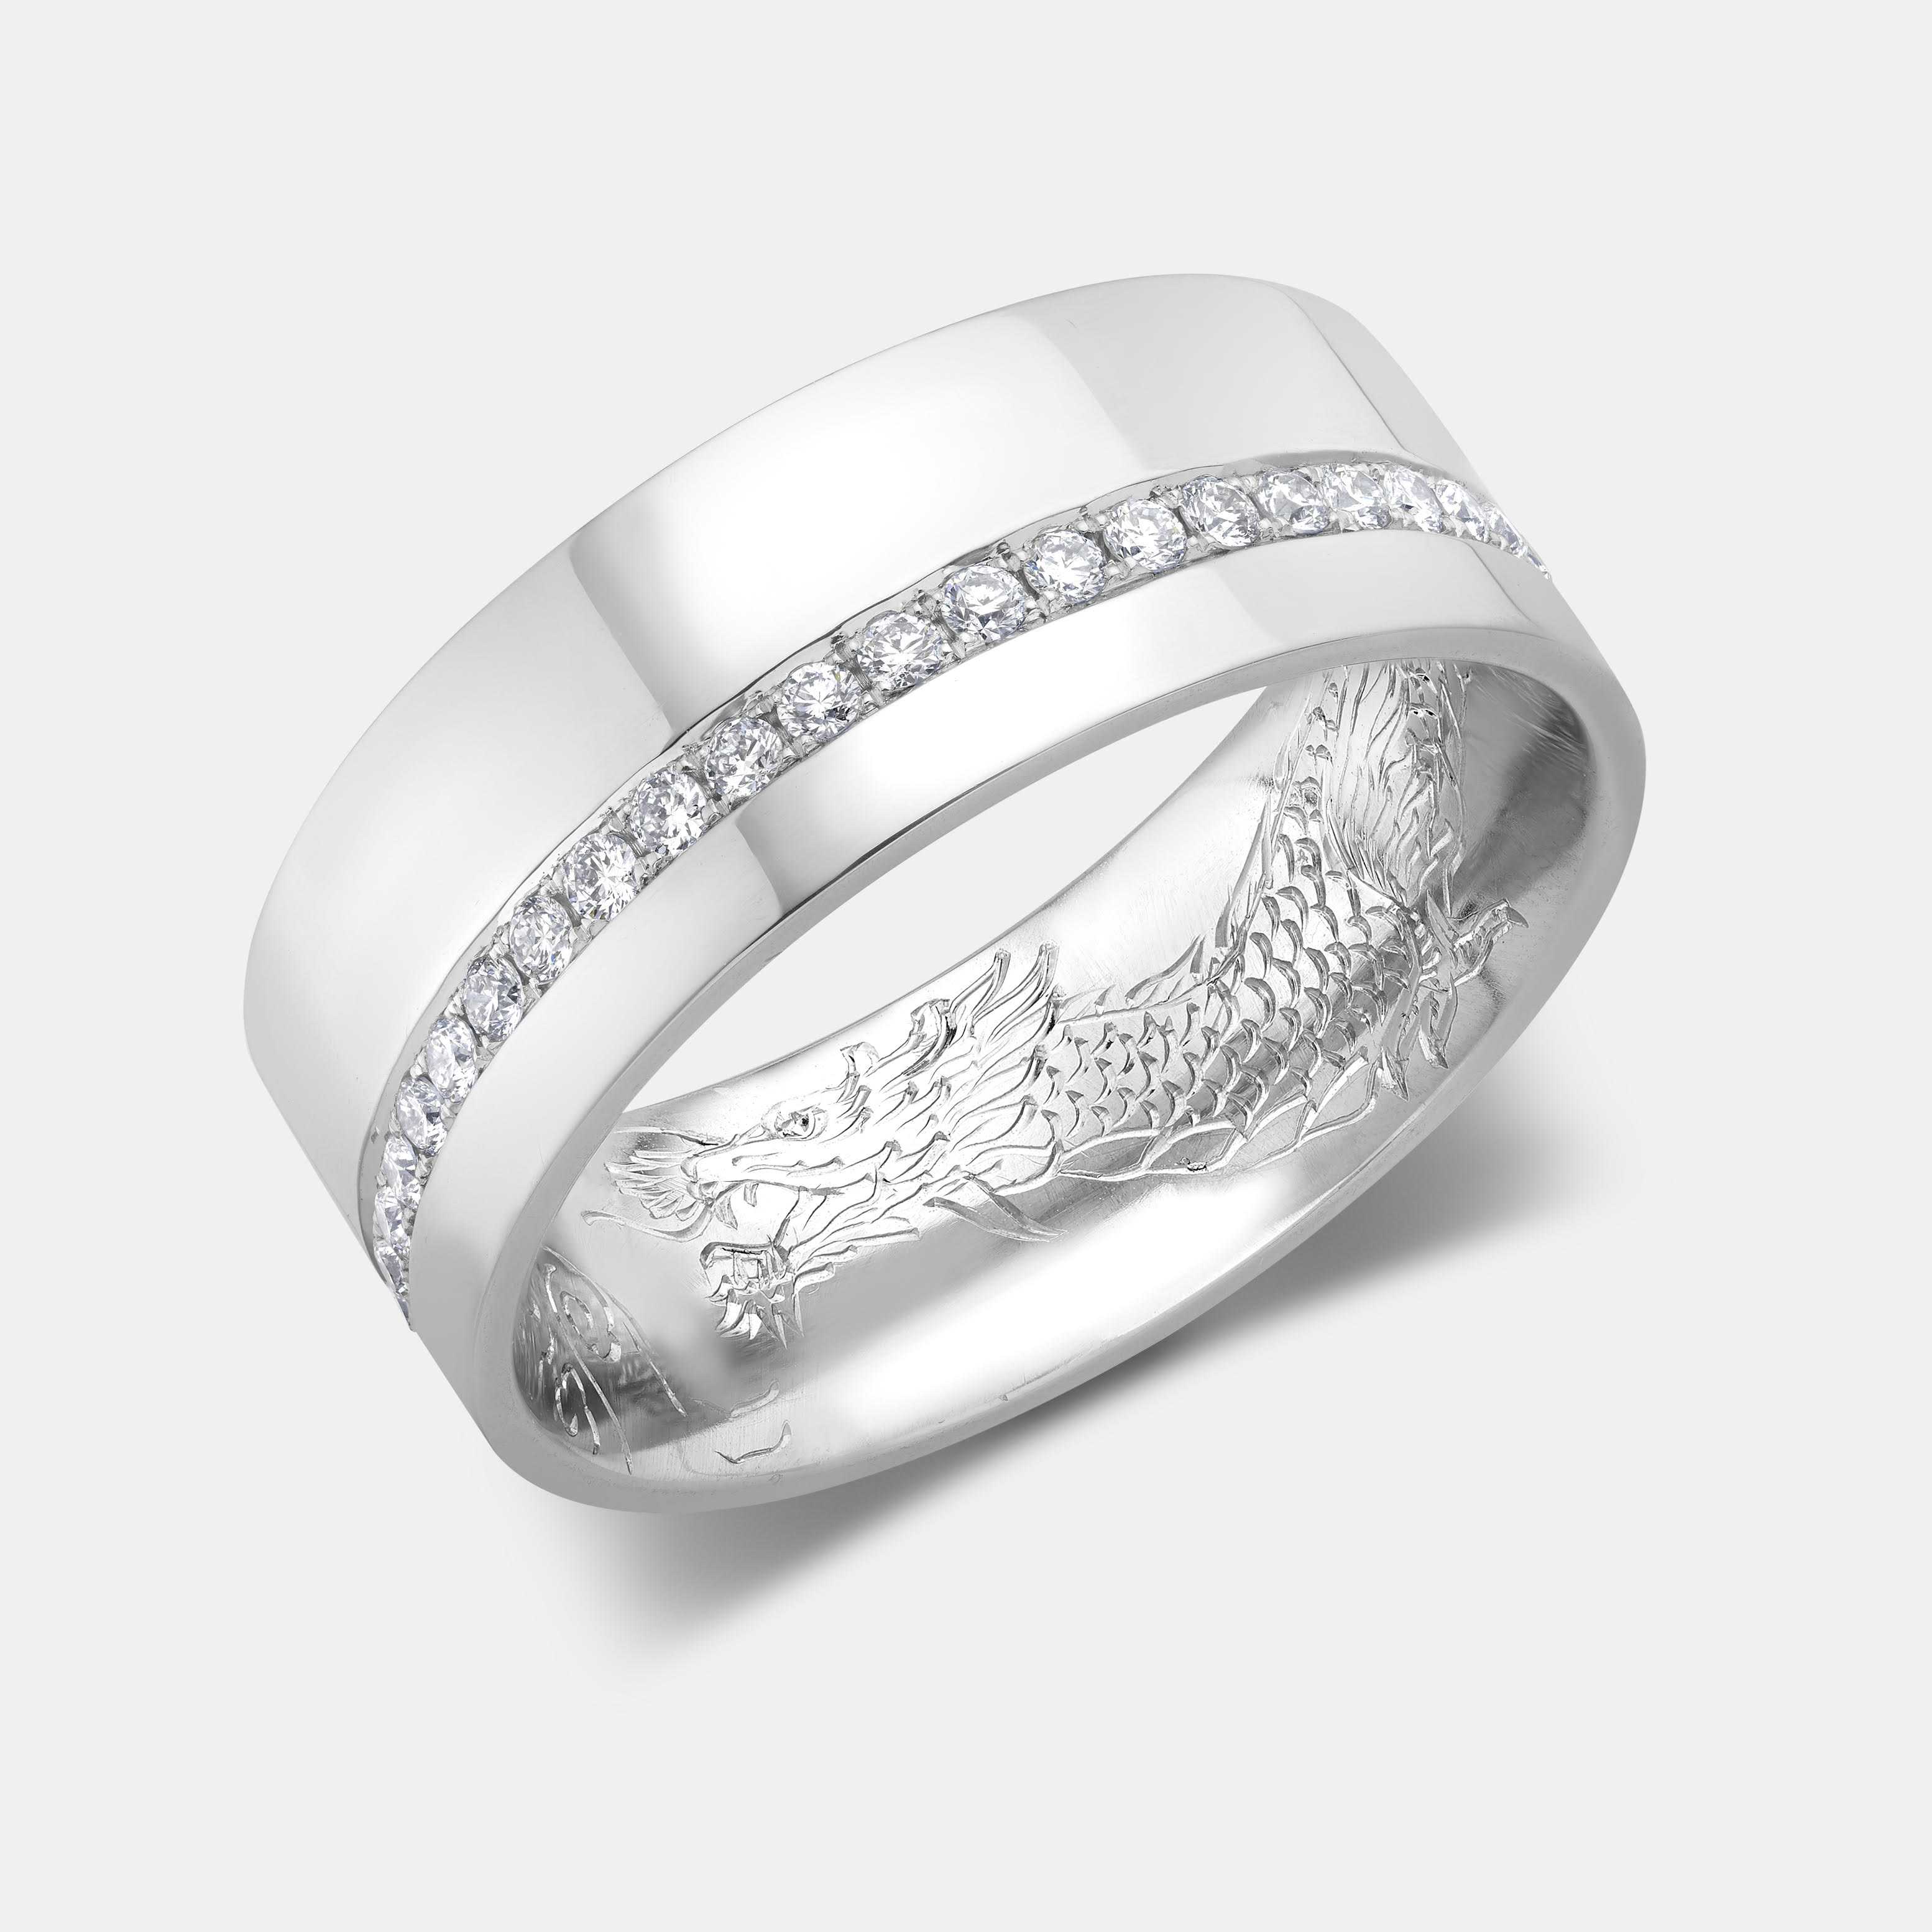 Chinese Dragon Engraved Wedding Ring